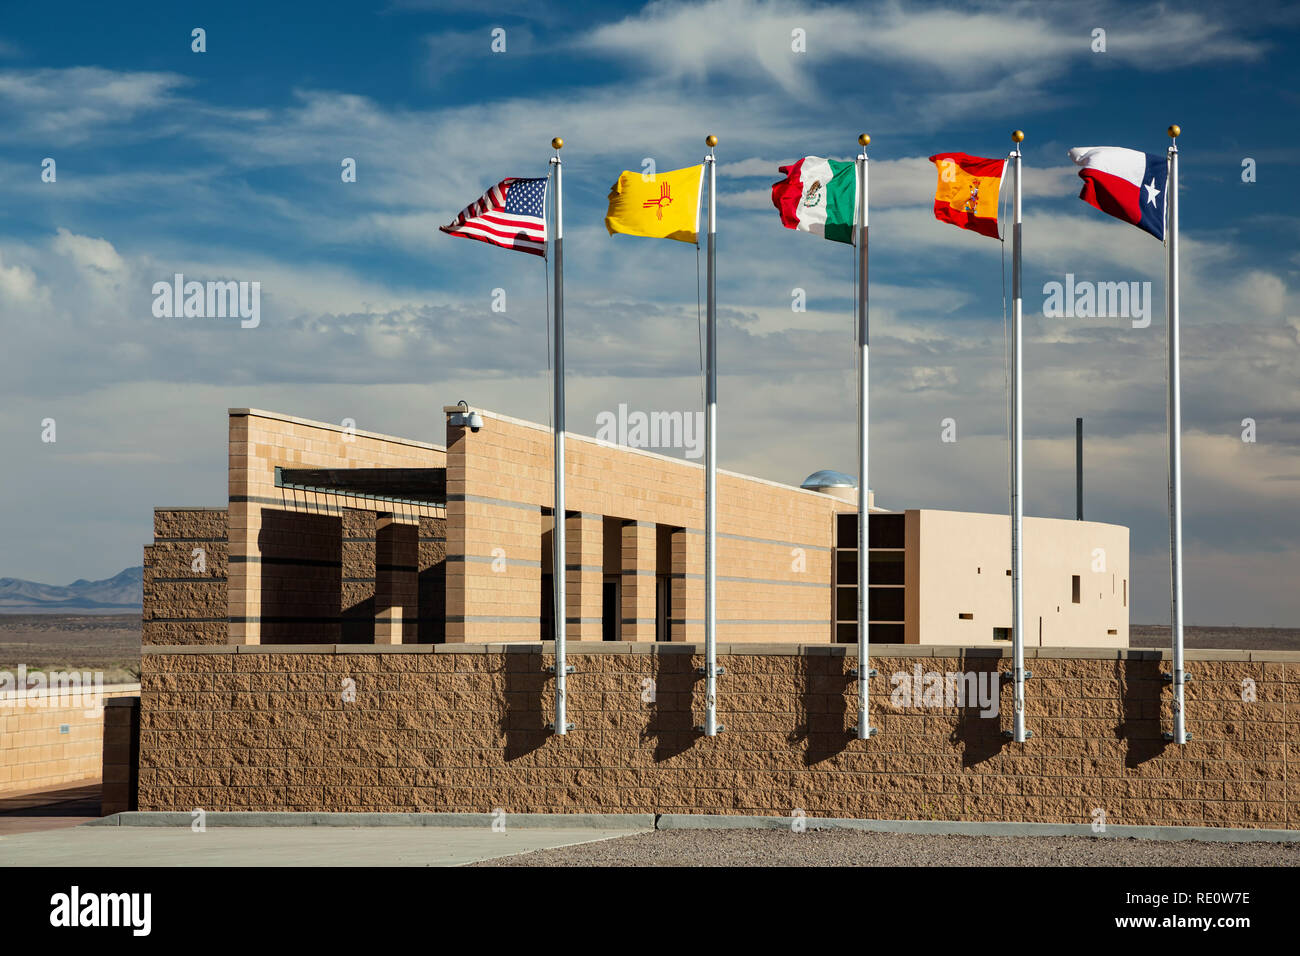 El Camino Real International Heritage Center, vicino a Socorro, Nuovo Messico USA Foto Stock